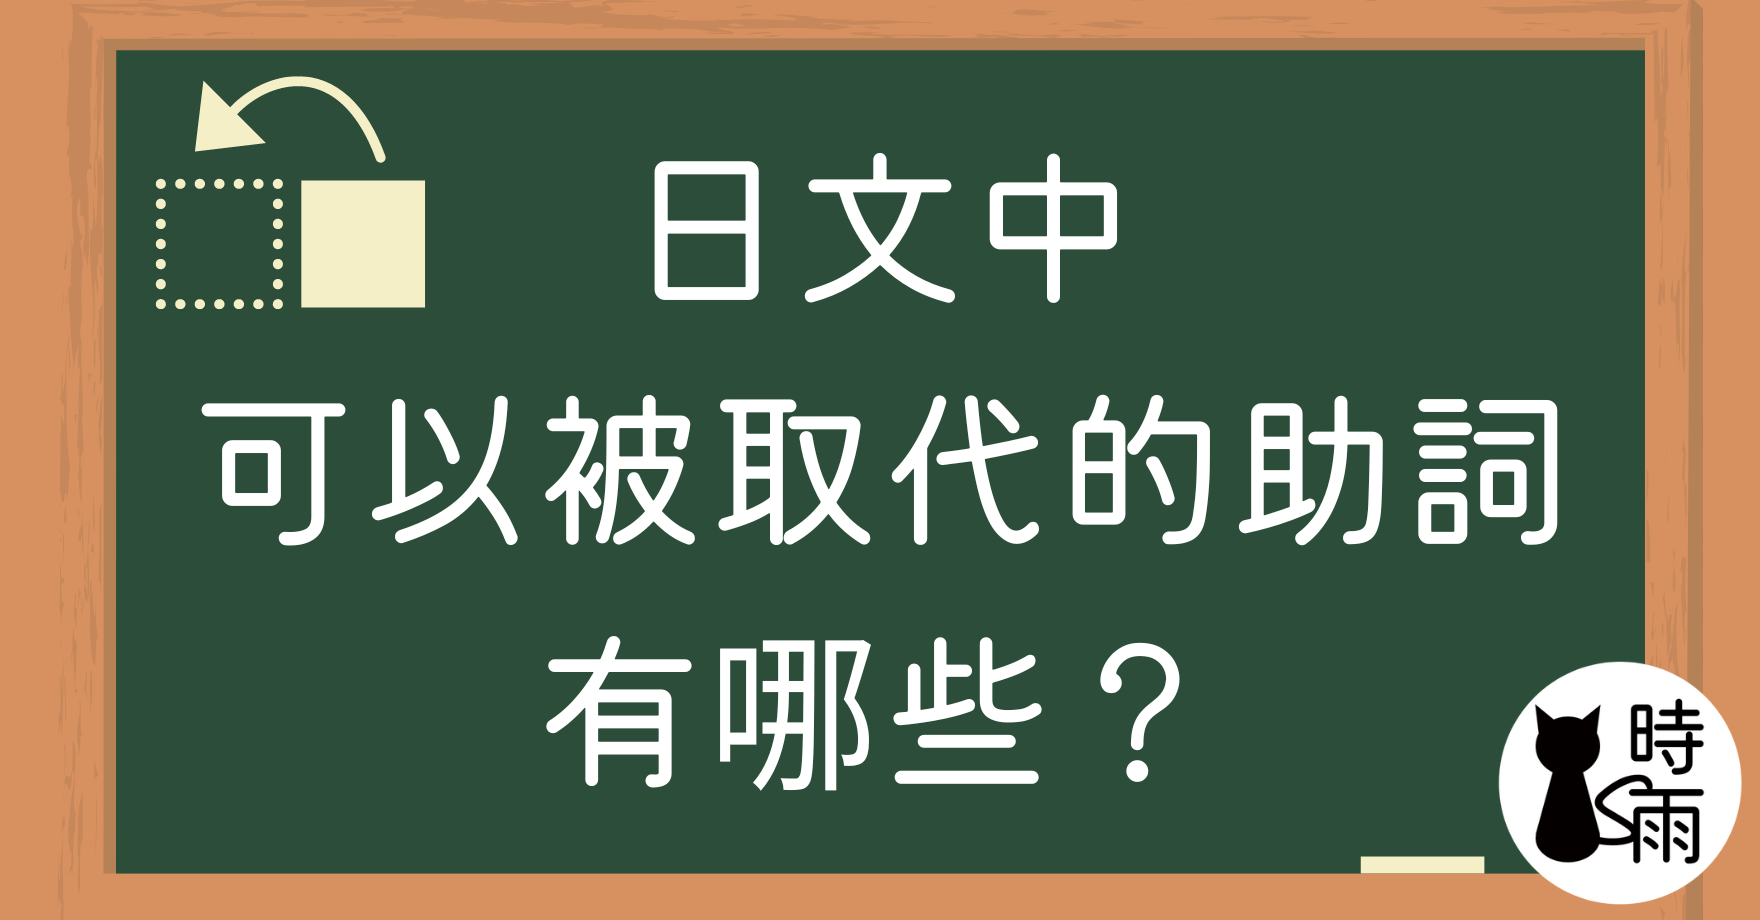 日文中可以被取代的助詞有哪些？